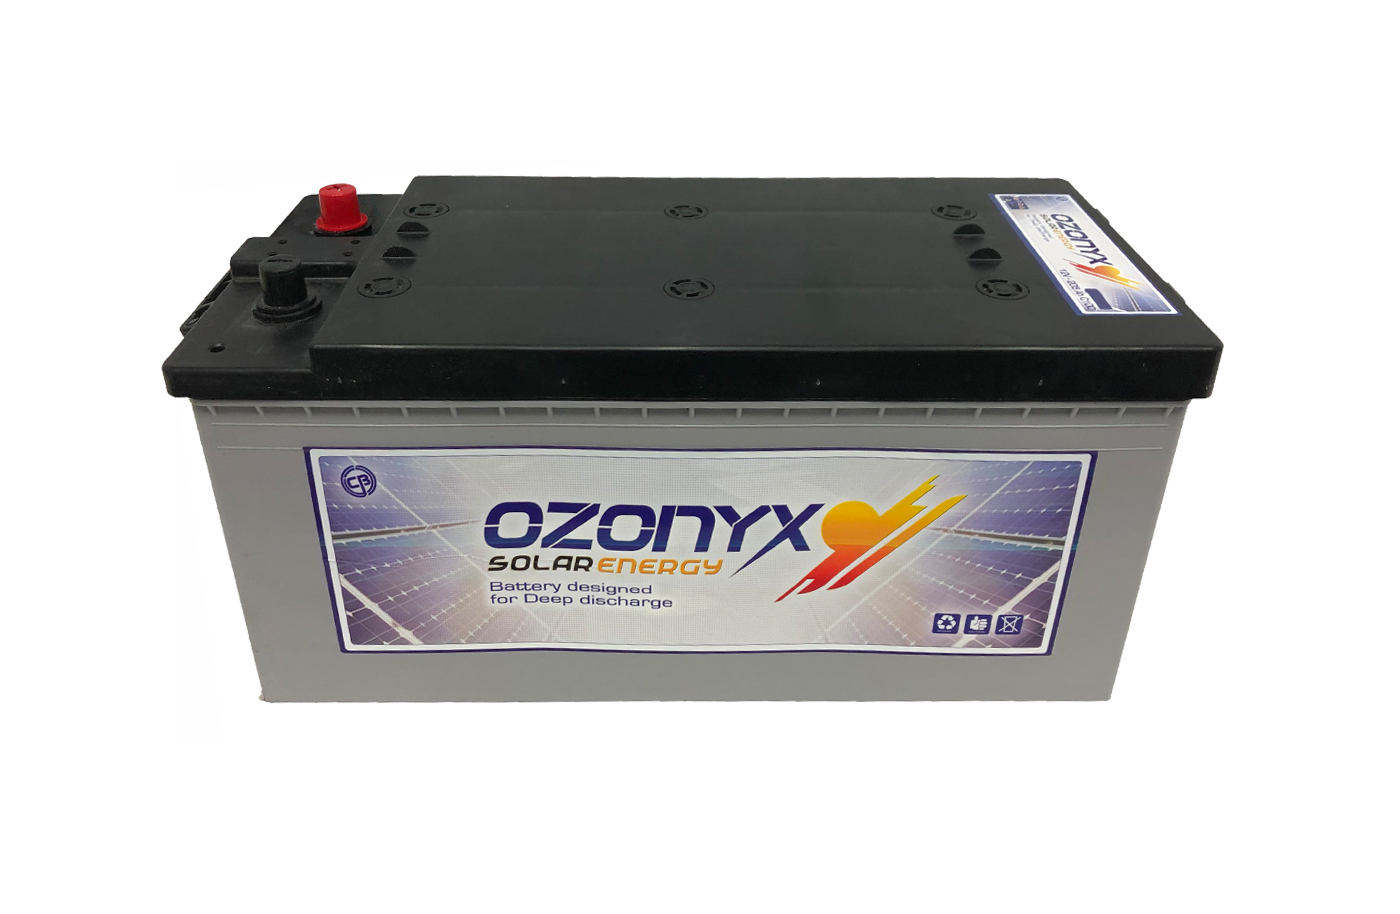 Batería AGM 12v - 205 AH  Hermética OZONYX - Baterias web